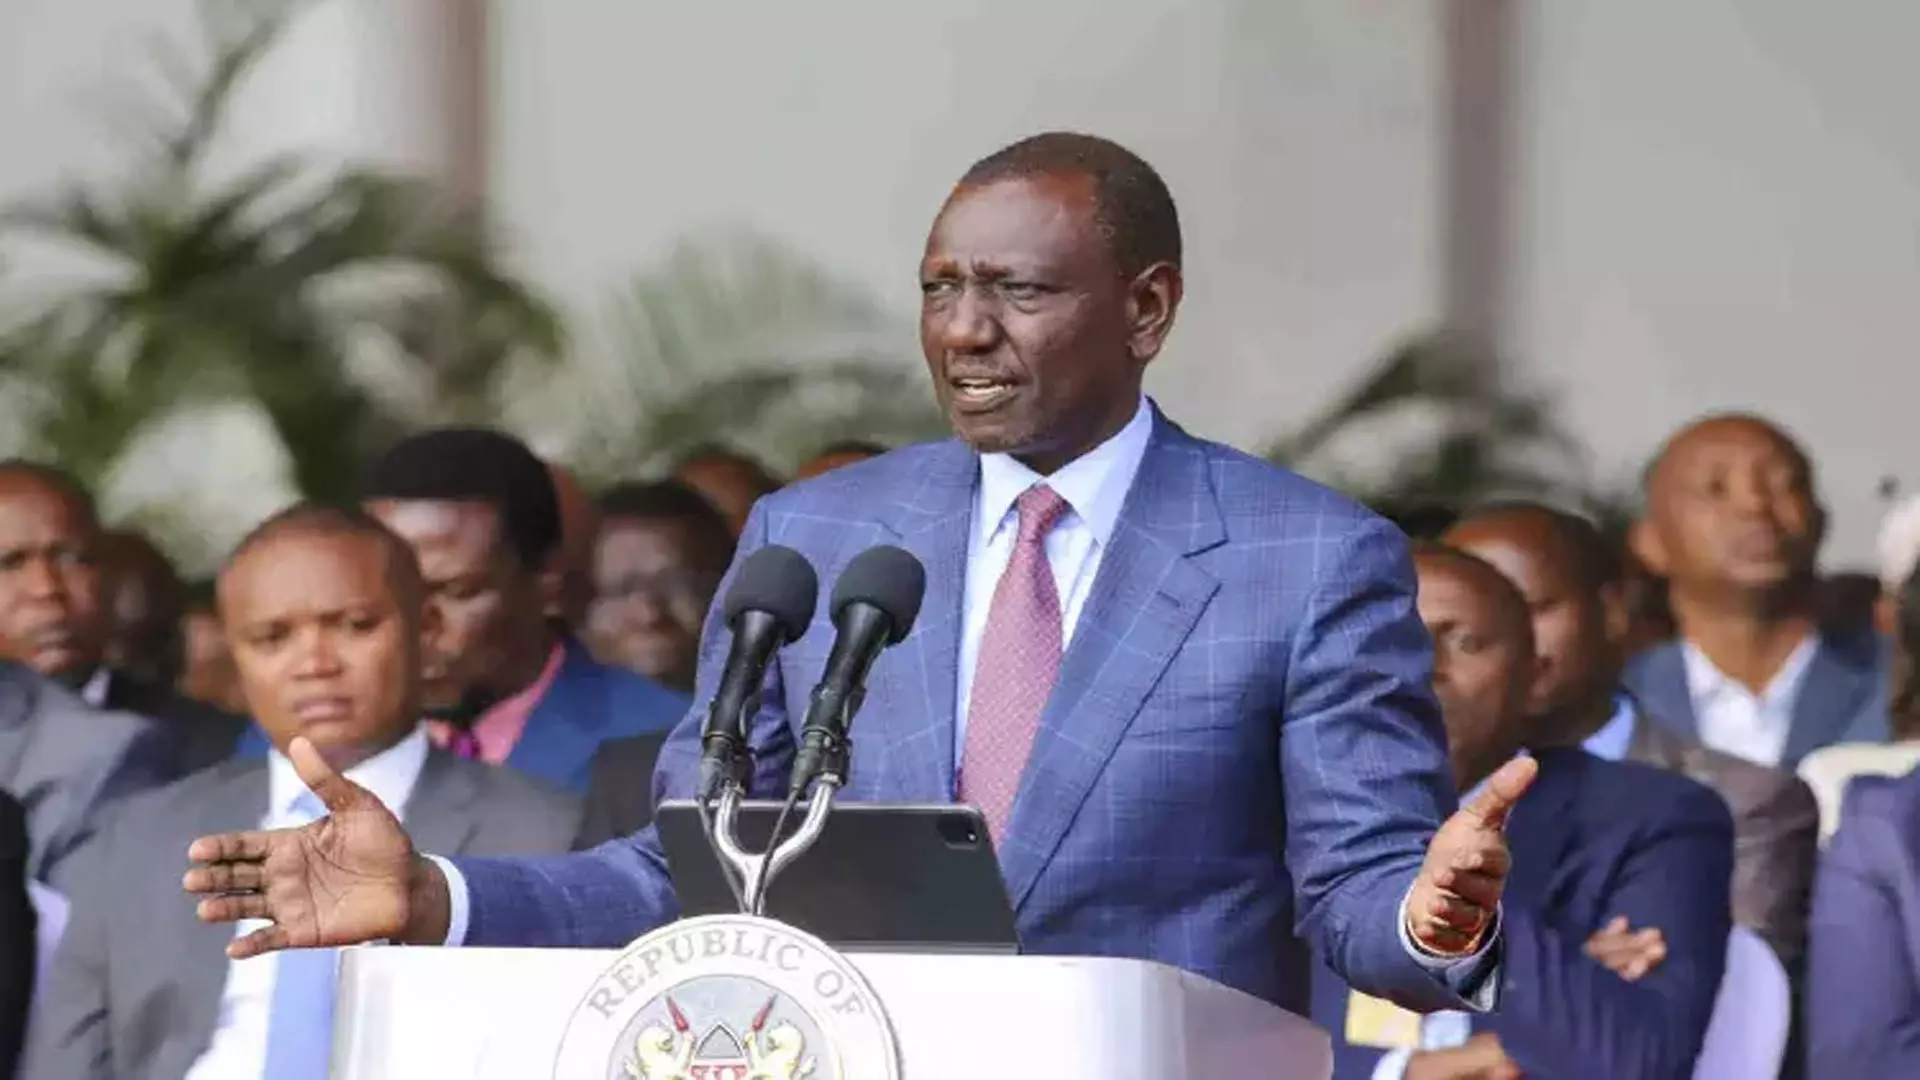 केन्या के राष्ट्रपति ने कहा कि वह वित्त विधेयक पर हस्ताक्षर नहीं करेंगे